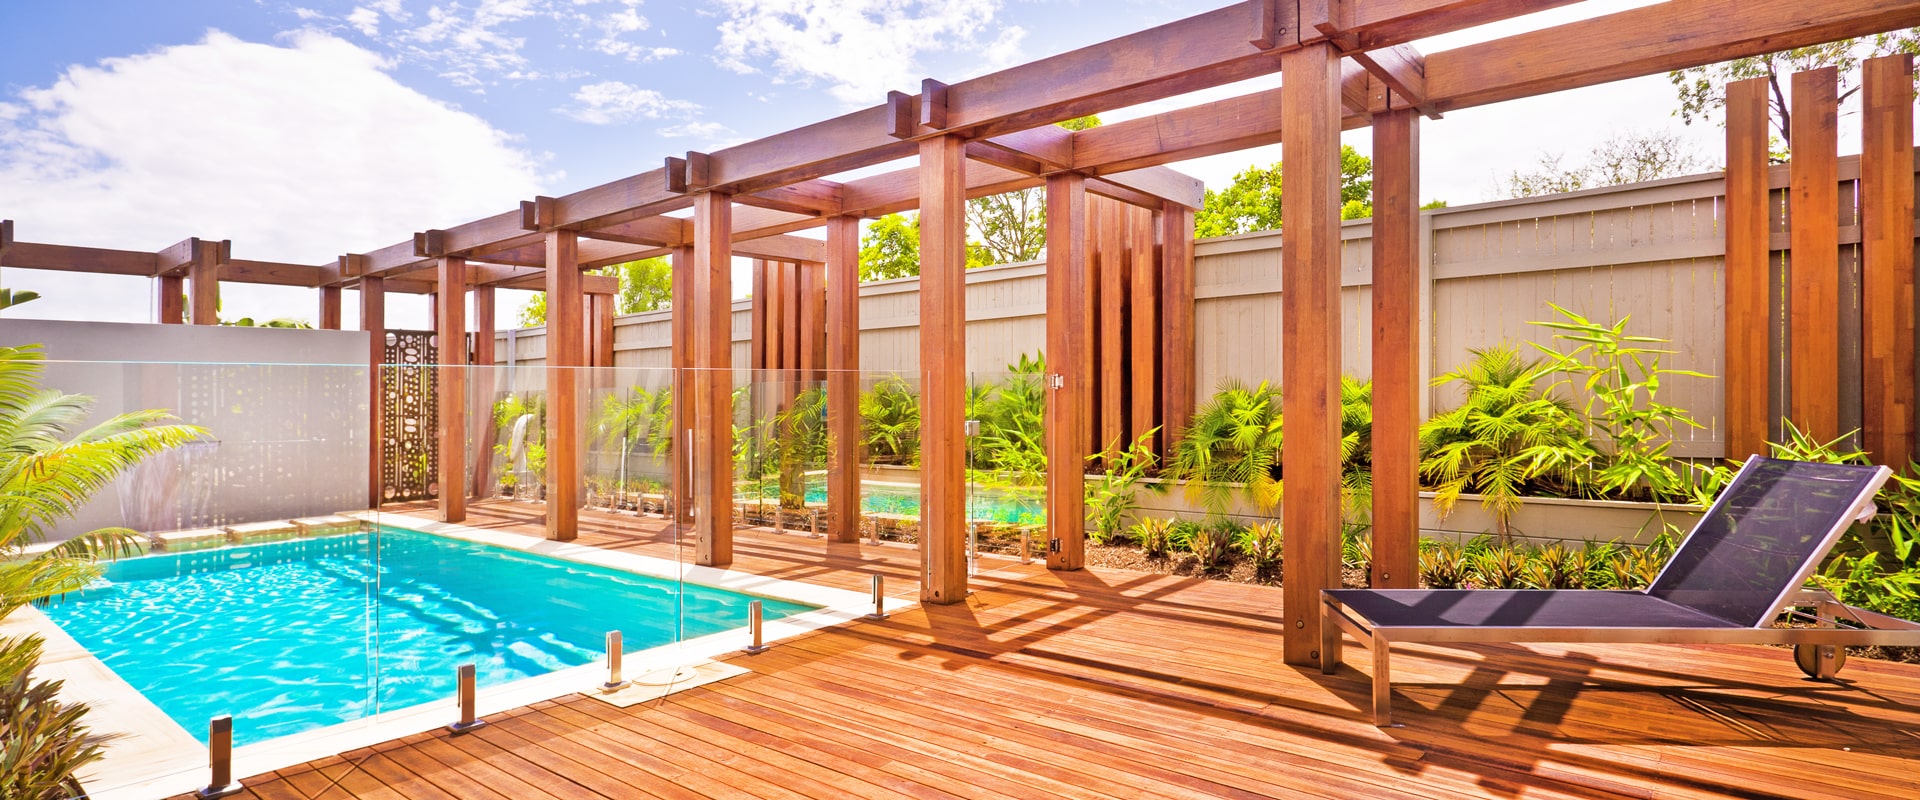 slider piscine décor bois